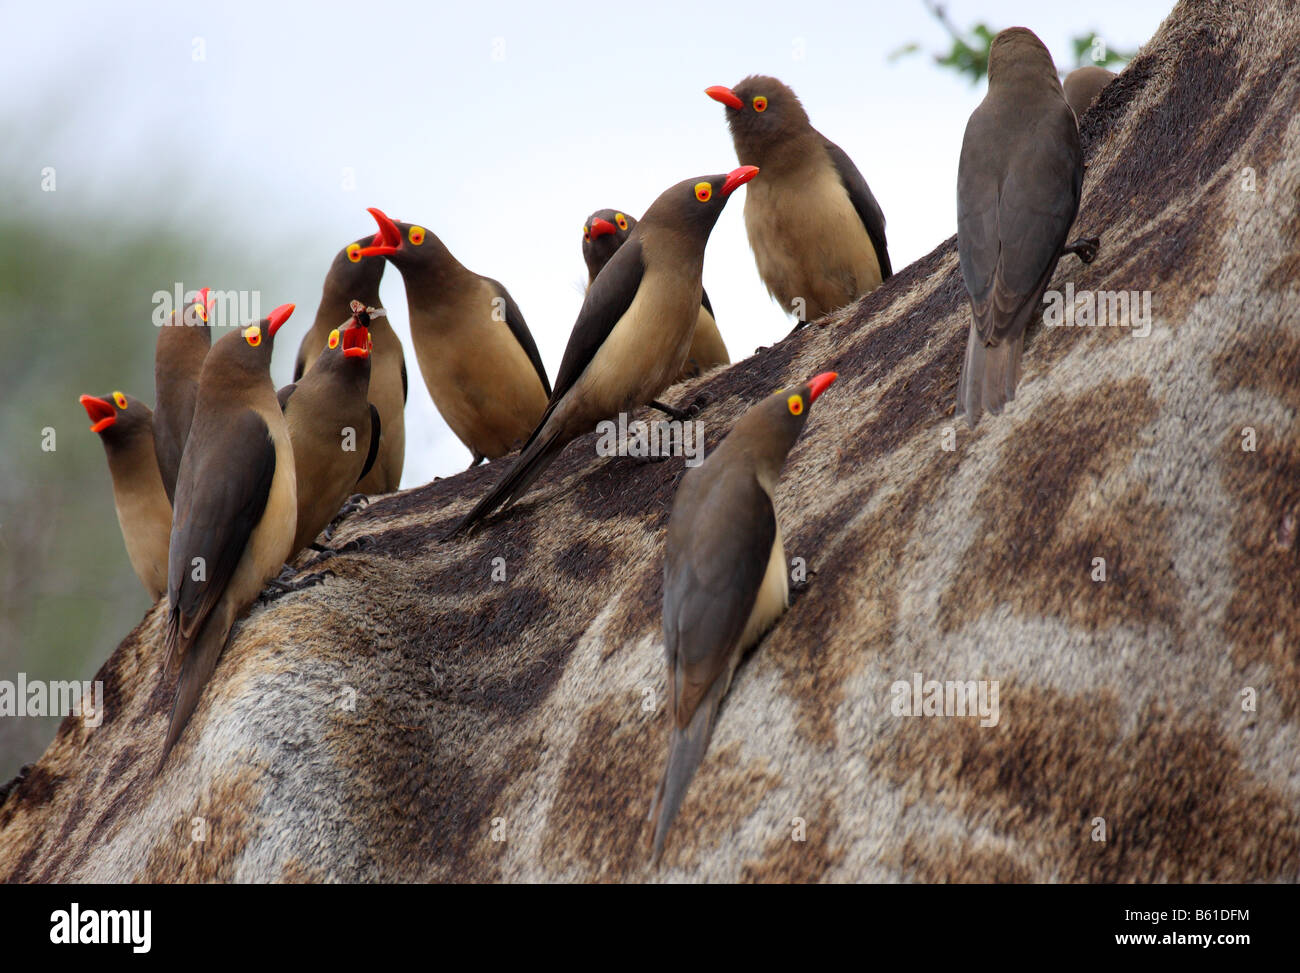 Redbilled groupe oxpeckers au dos de la girafe se nourrit de termites volants Banque D'Images